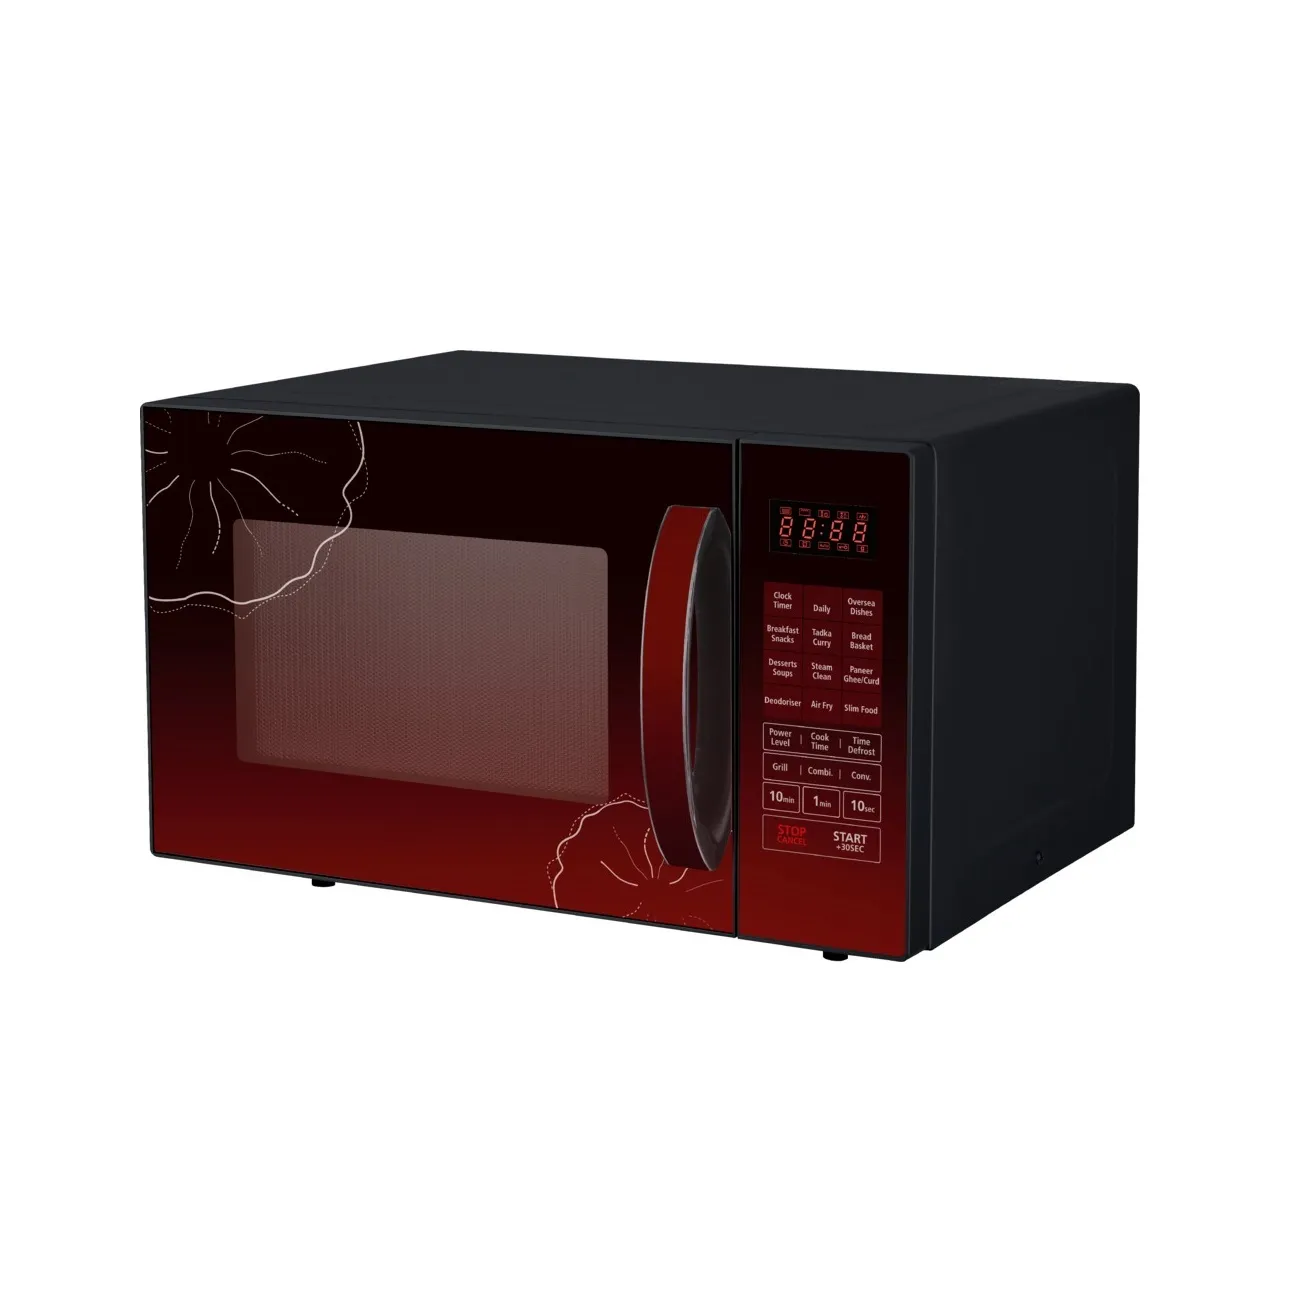 DW 530 AF Air Fryer Microwave Oven